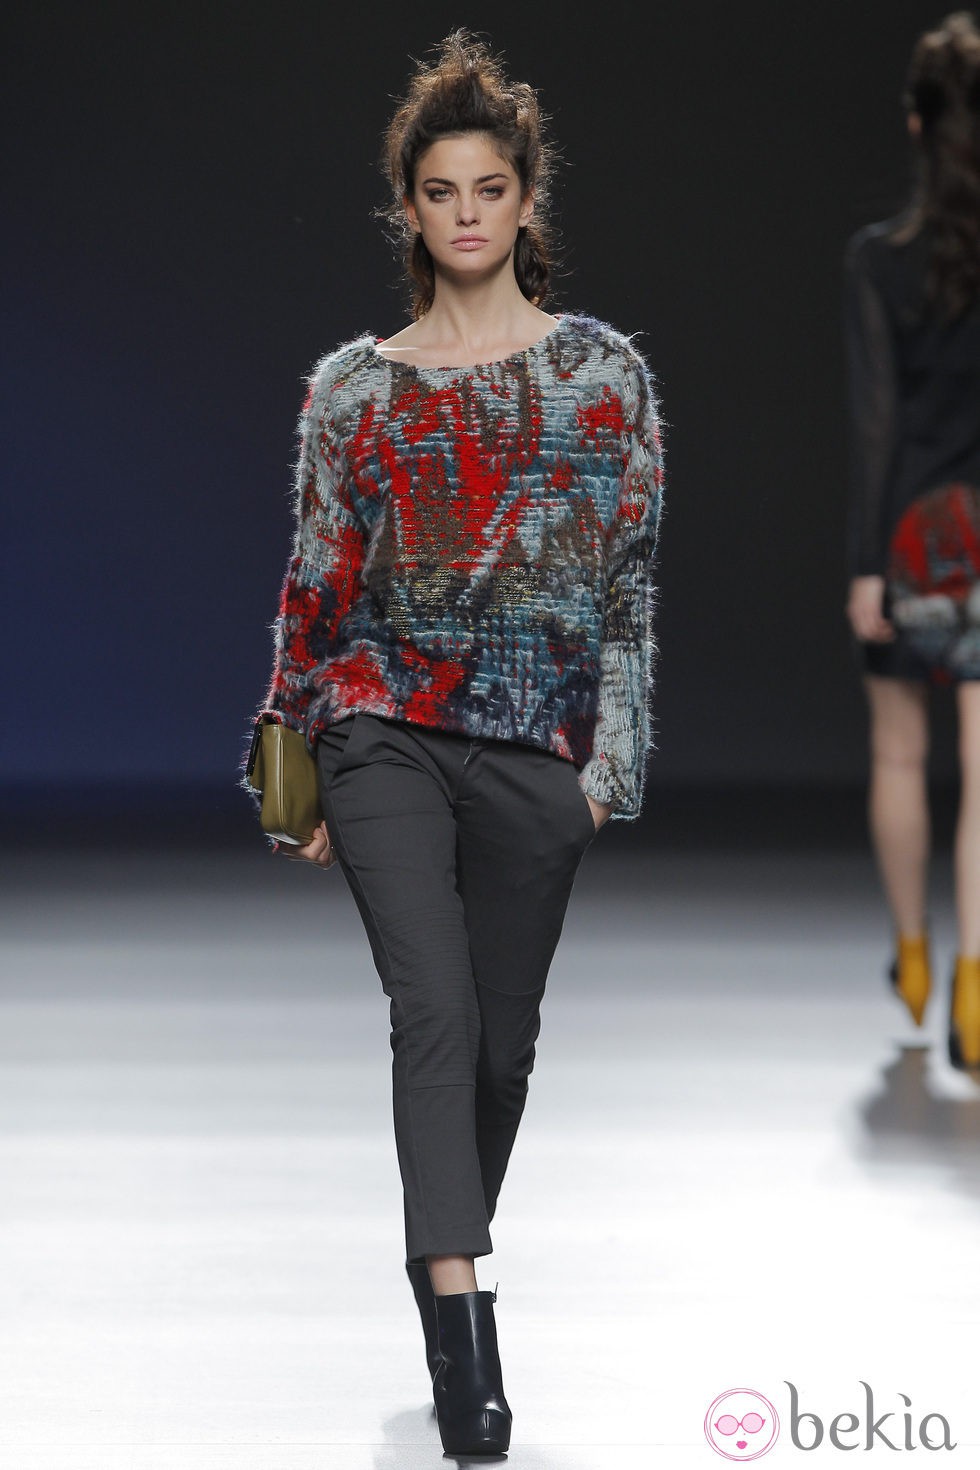 Jersey étnico de la colección otoño/invierno 2013/2014 de Sara Coleman en Madrid Fashion Week